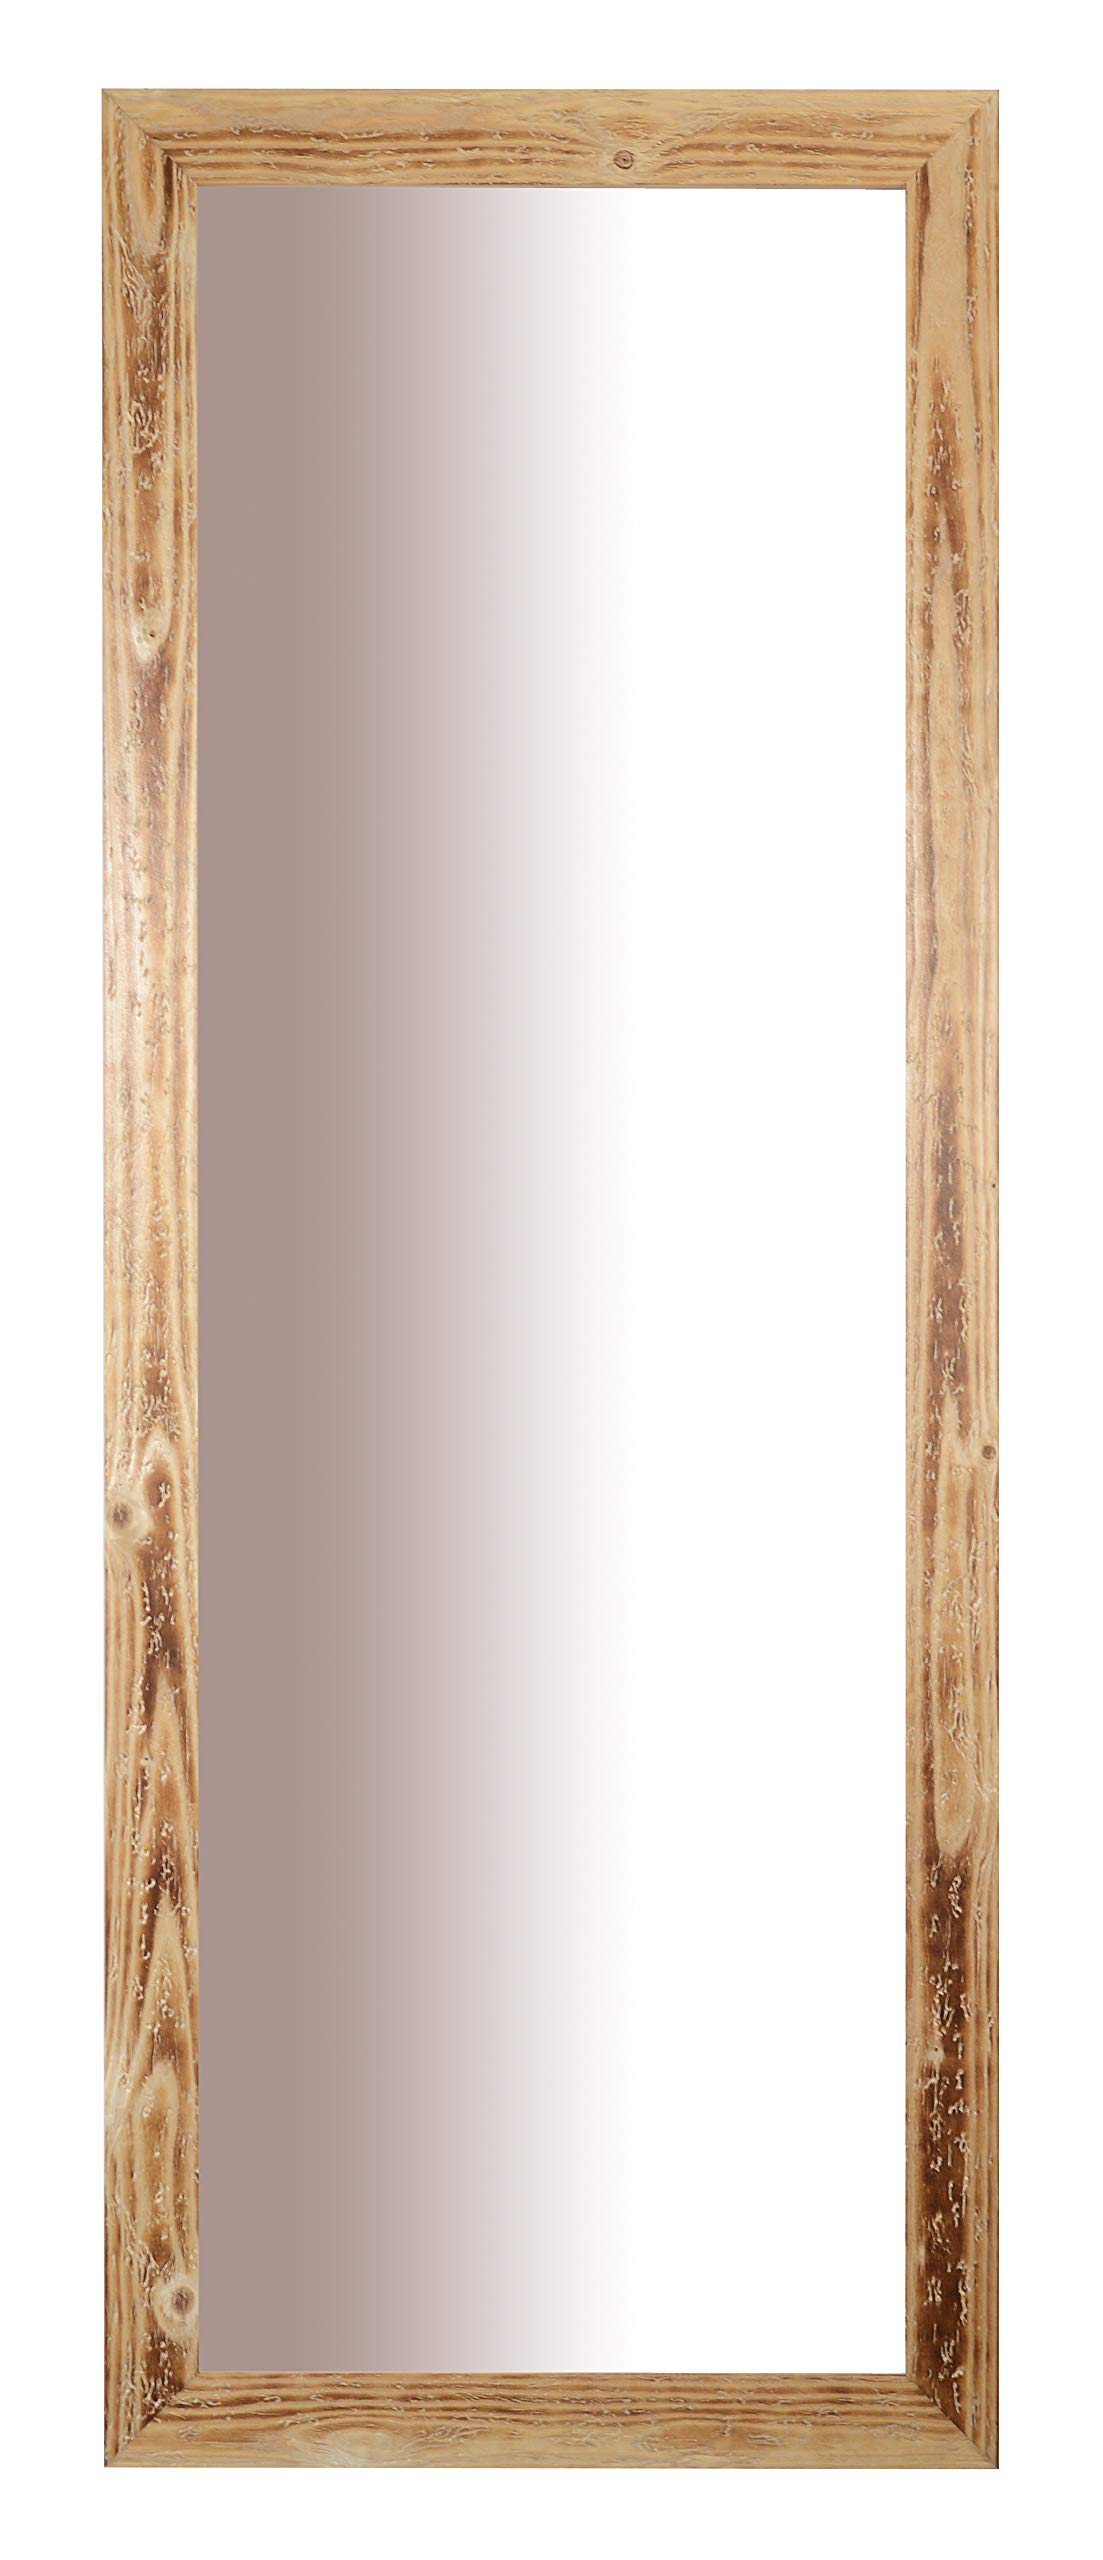 MO.WA Spiegel Holzspiegel Ganzkörperspiegel Wandspiegel 56x147 Garderobespiegel mit Massivholzrahmen Natur Spiegel groß Ankleidespiegel Standspiegel